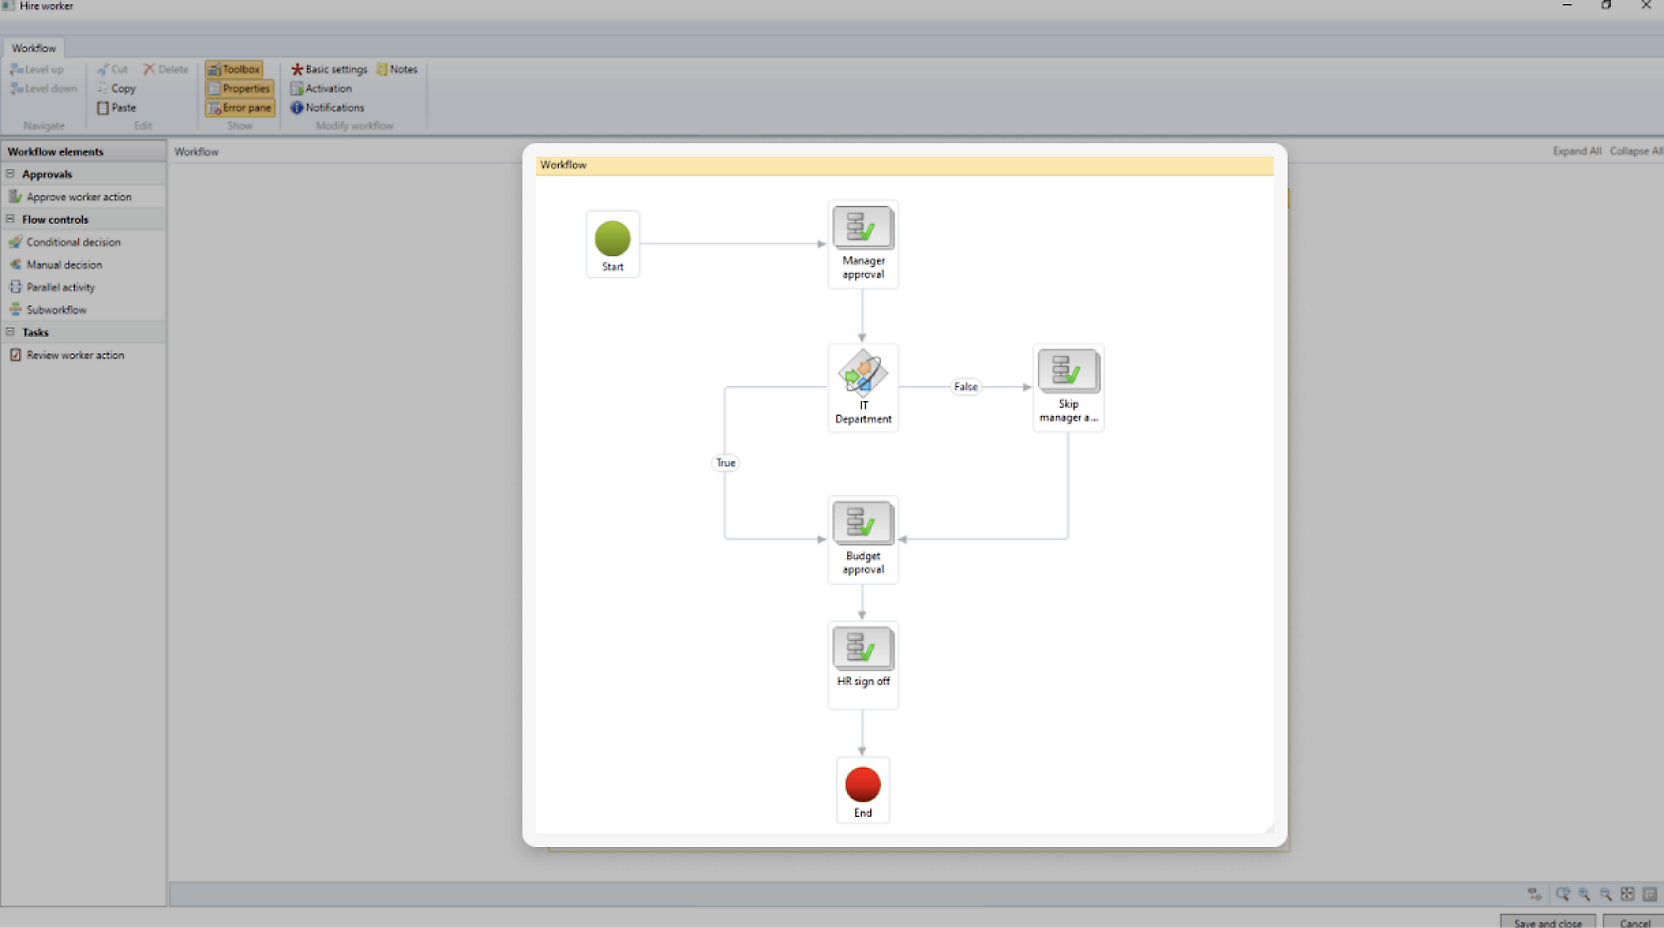 Uma tela de computador exibe um diagrama de fluxo de trabalho em um aplicativo de software. O diagrama mostra um processo de "Iniciar" por meio de várias etapas